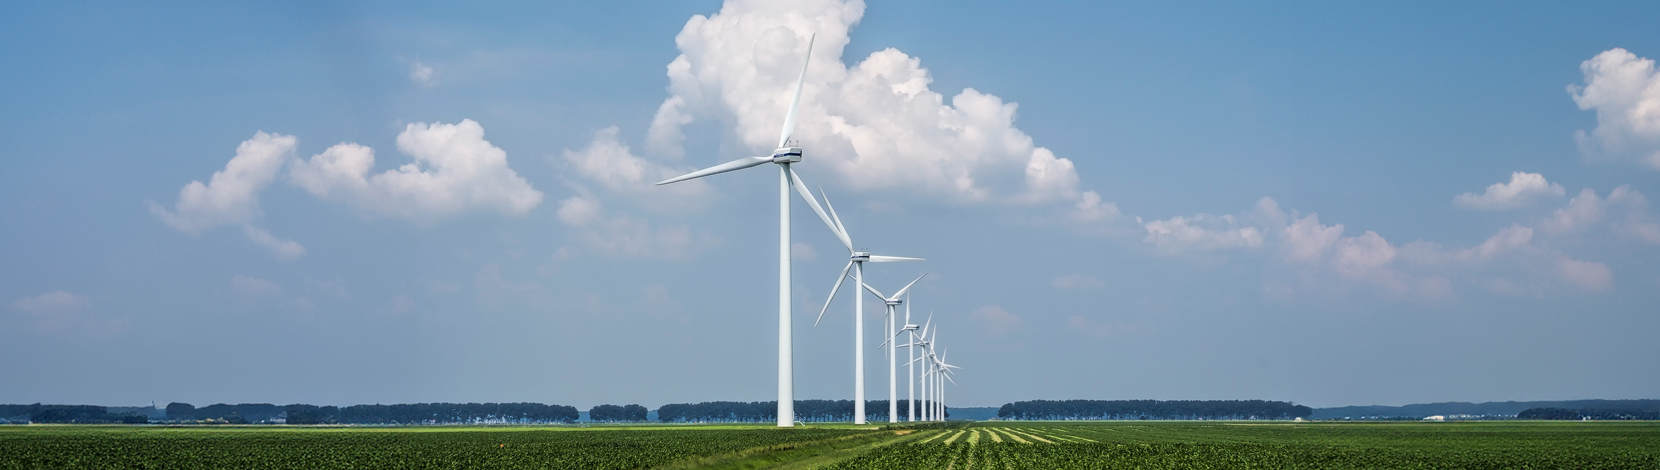 Il decreto quadro e il futuro delle energie rinnovabili – Electrosuisse